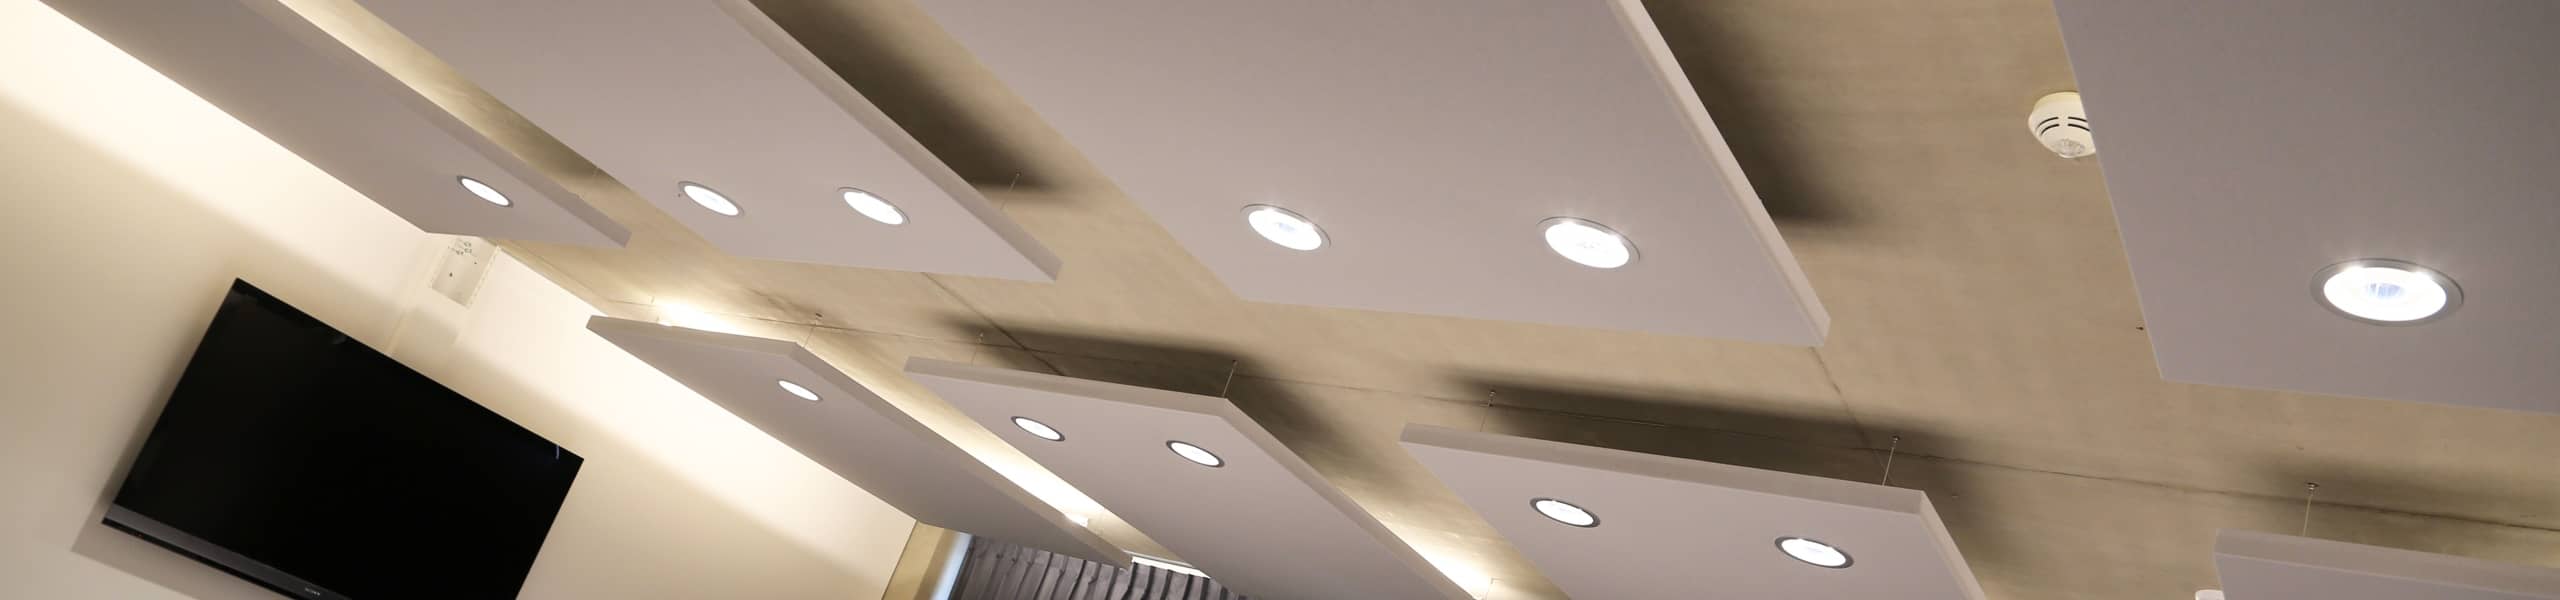 Huit panneaux acoustiques gris avec spots de lumière intégrés sur plafond béton dans salle de réunion professionnelle.